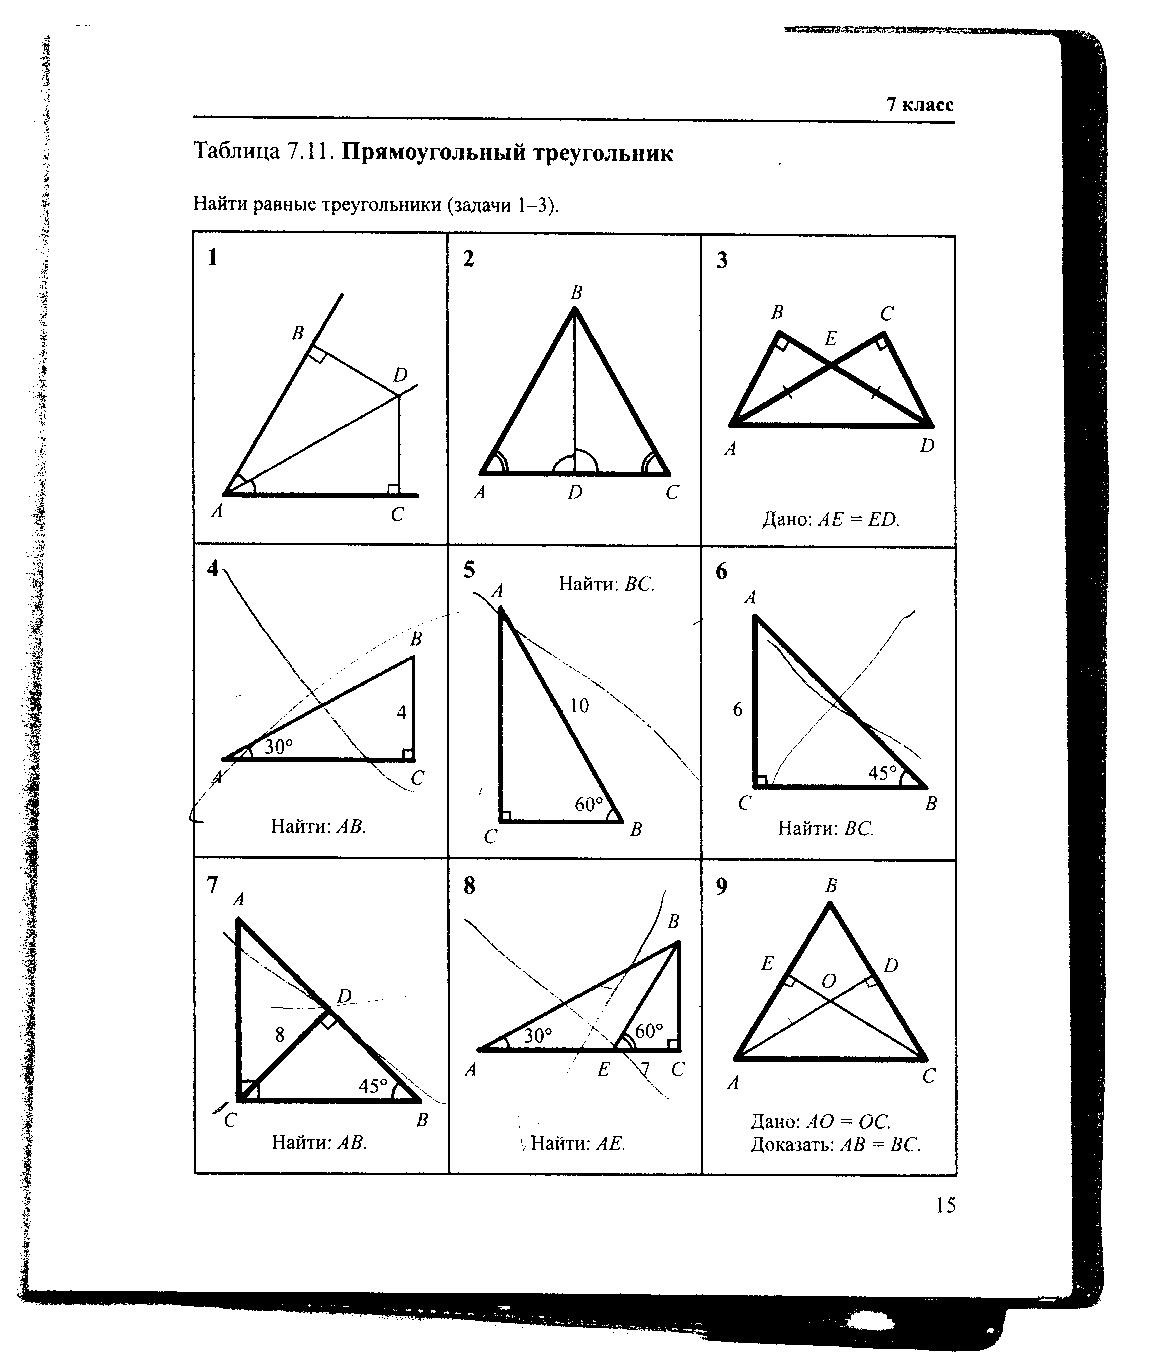 Готовые чертежи геометрия 9 класс. Геометрия Рабинович 7-9 класс задачи на готовых чертежах. Гдз по геометрии Рабинович 7-9 класс задачи на готовых чертежах. Гдз Рабинович 7-9 класс геометрия ответы. Таблица 7.11 прямоугольный треугольник 7 класс.